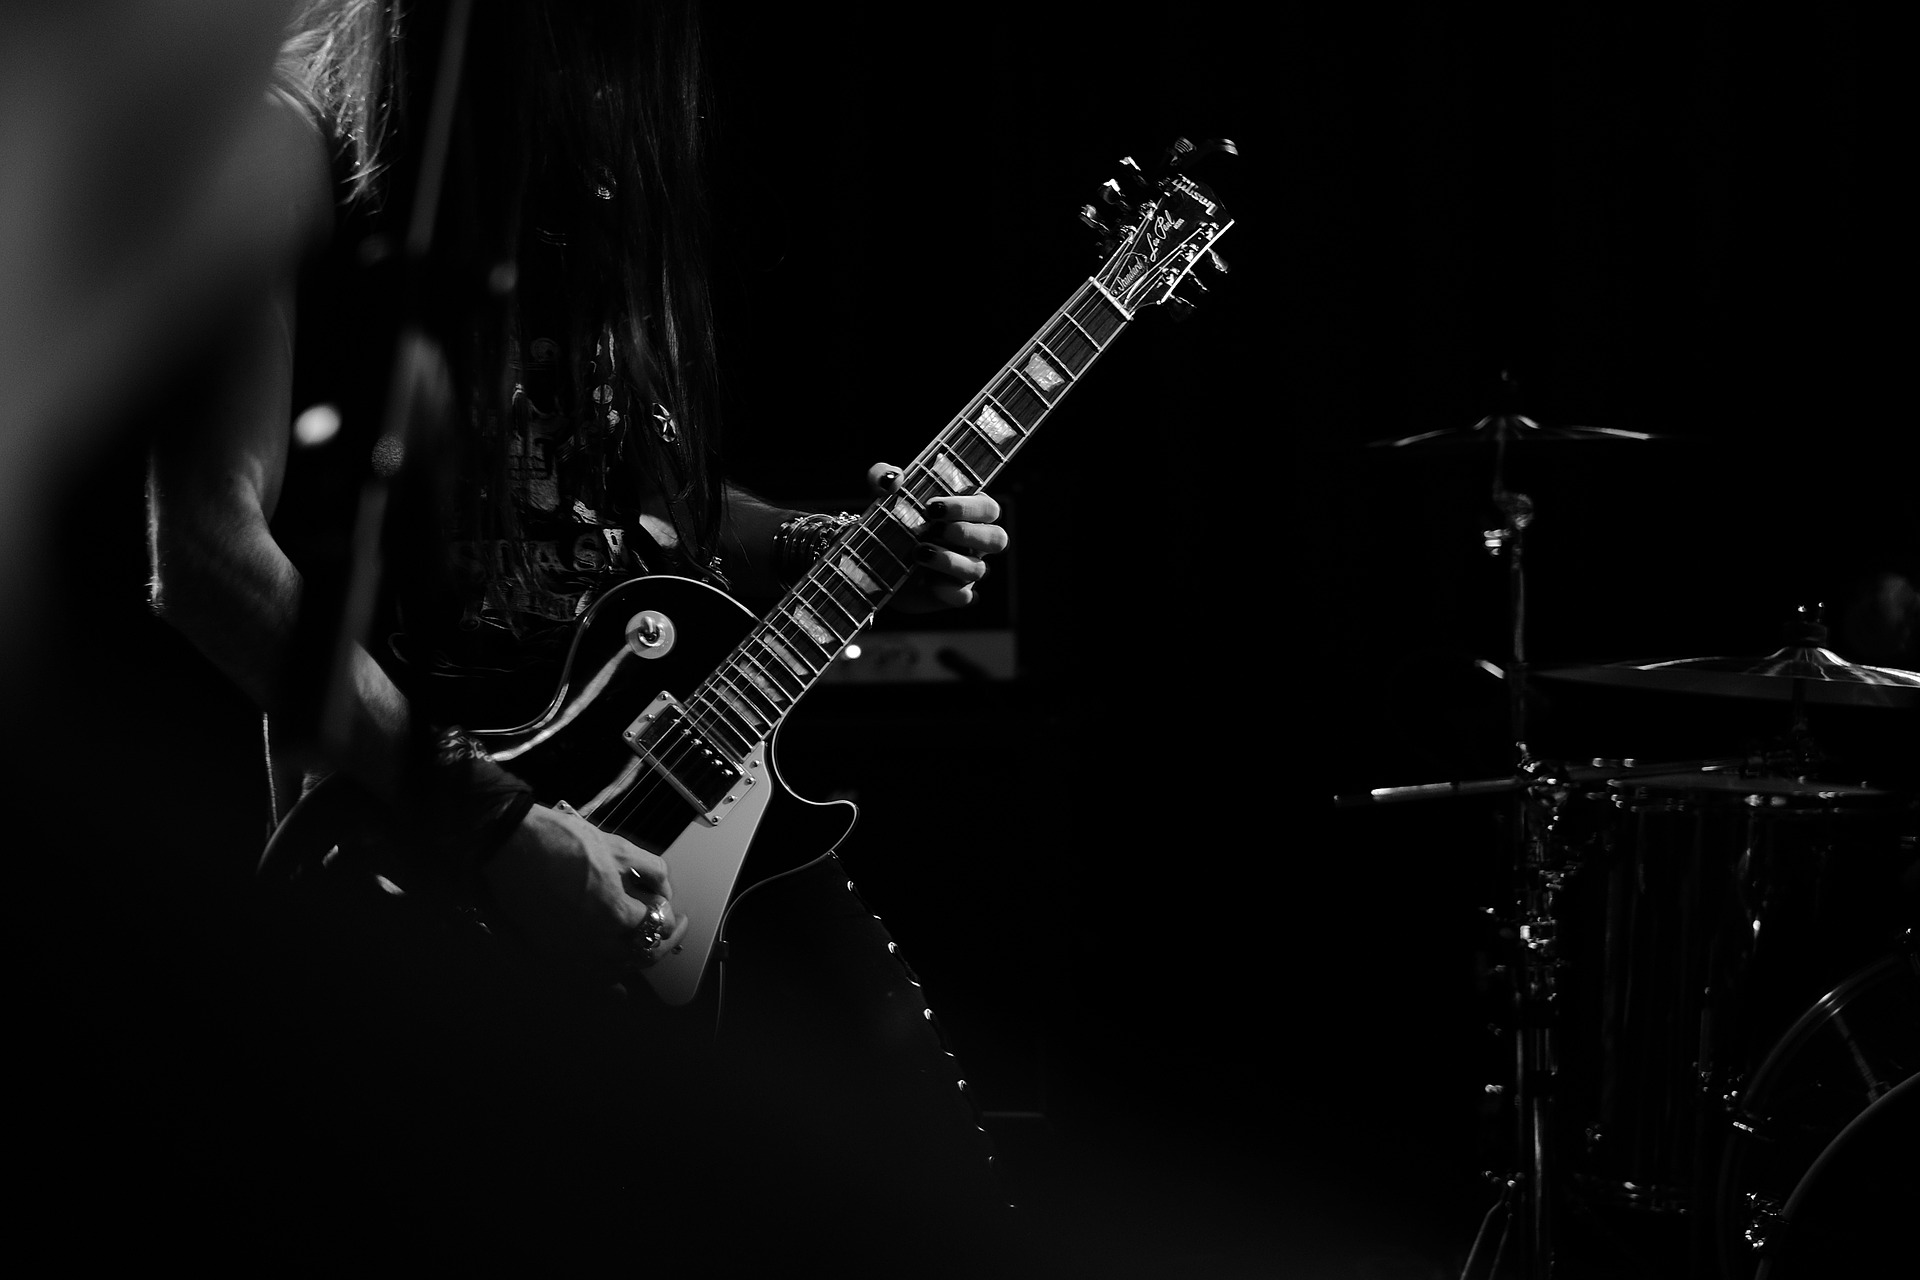 El legendario guitarrista Peter Frampton anuncia el diagnóstico de miositis con cuerpos de inclusión